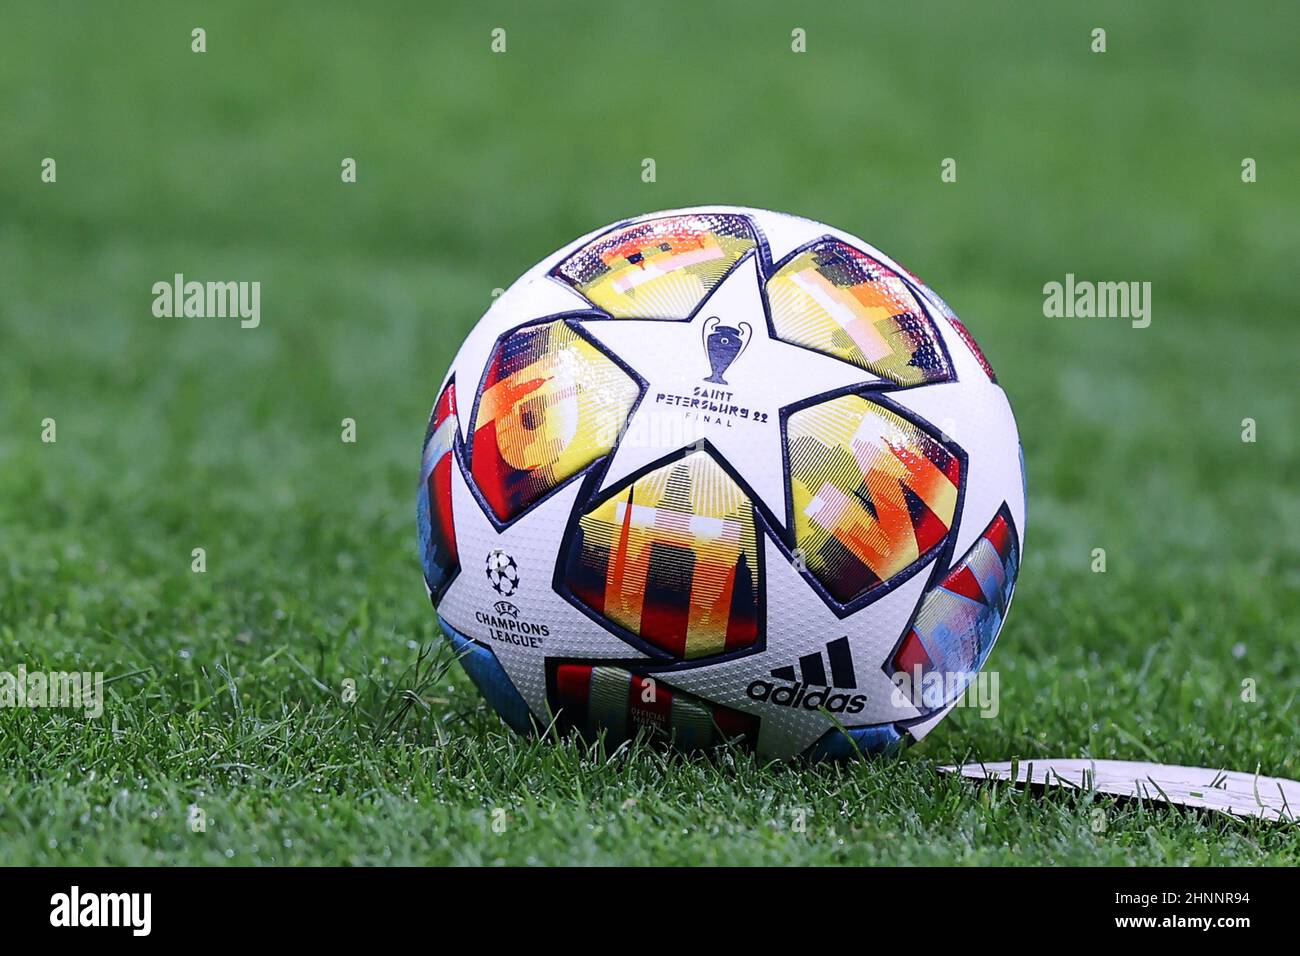 Der offizielle UEFA Champions League-Spielball von Adidas Sankt Petersburg  22 Finale während der UEFA Champions League 2021/22 Runde von 16 - erstes  Bein footb Stockfotografie - Alamy